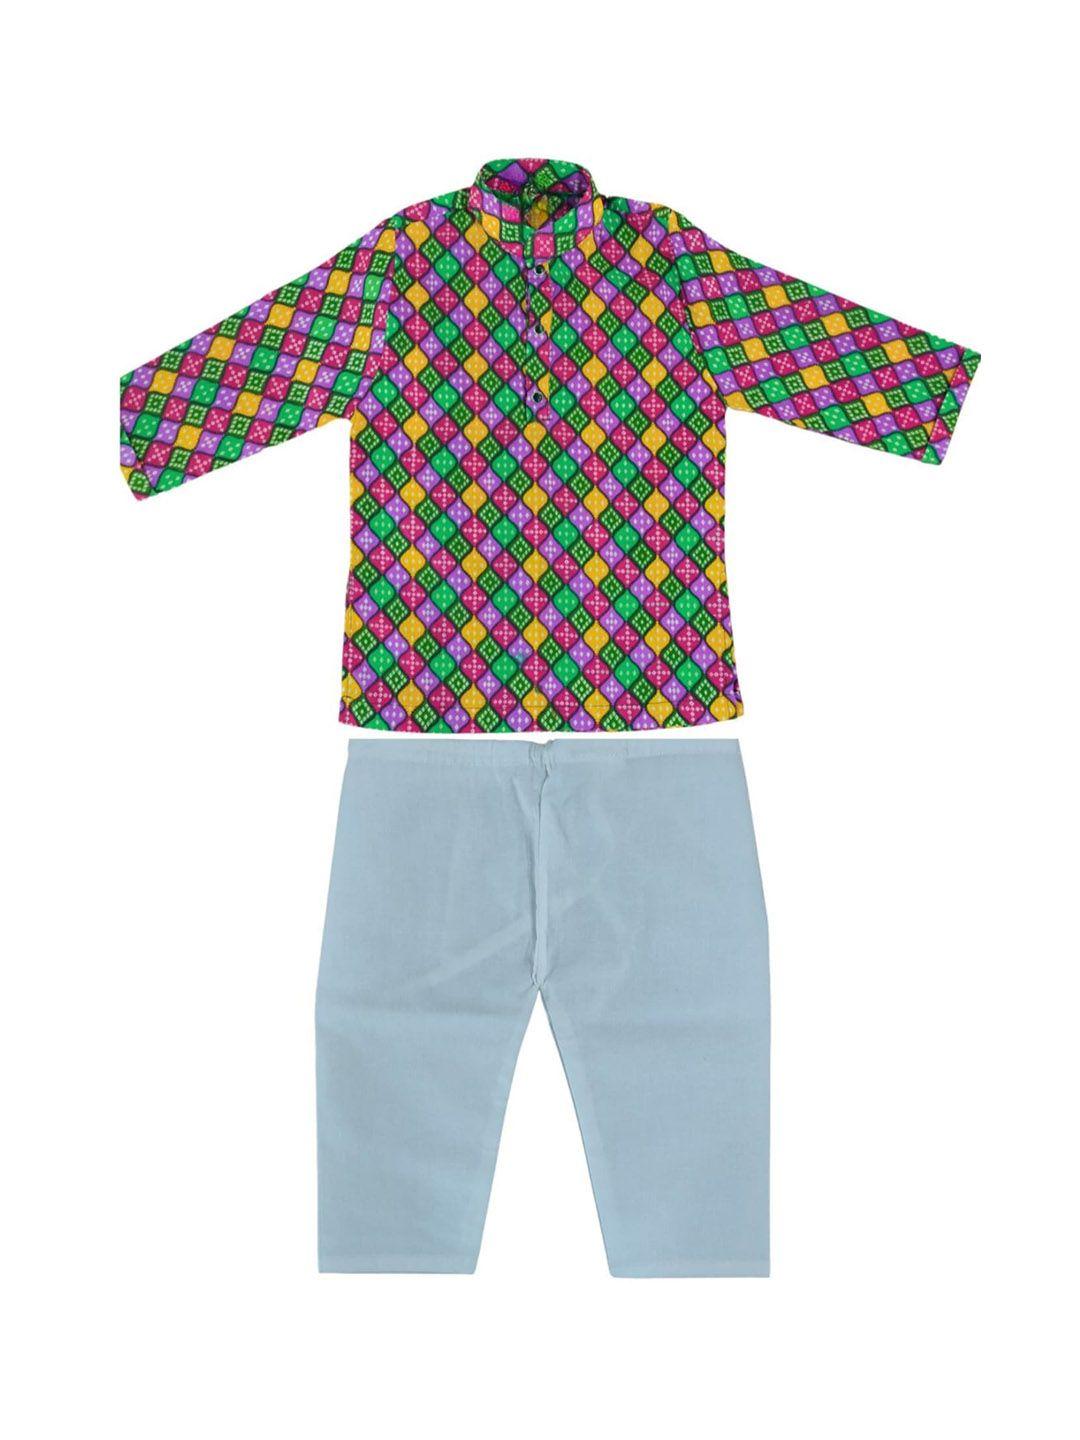 baesd boys bandhani printed straight pure cotton kurta with pyjamas